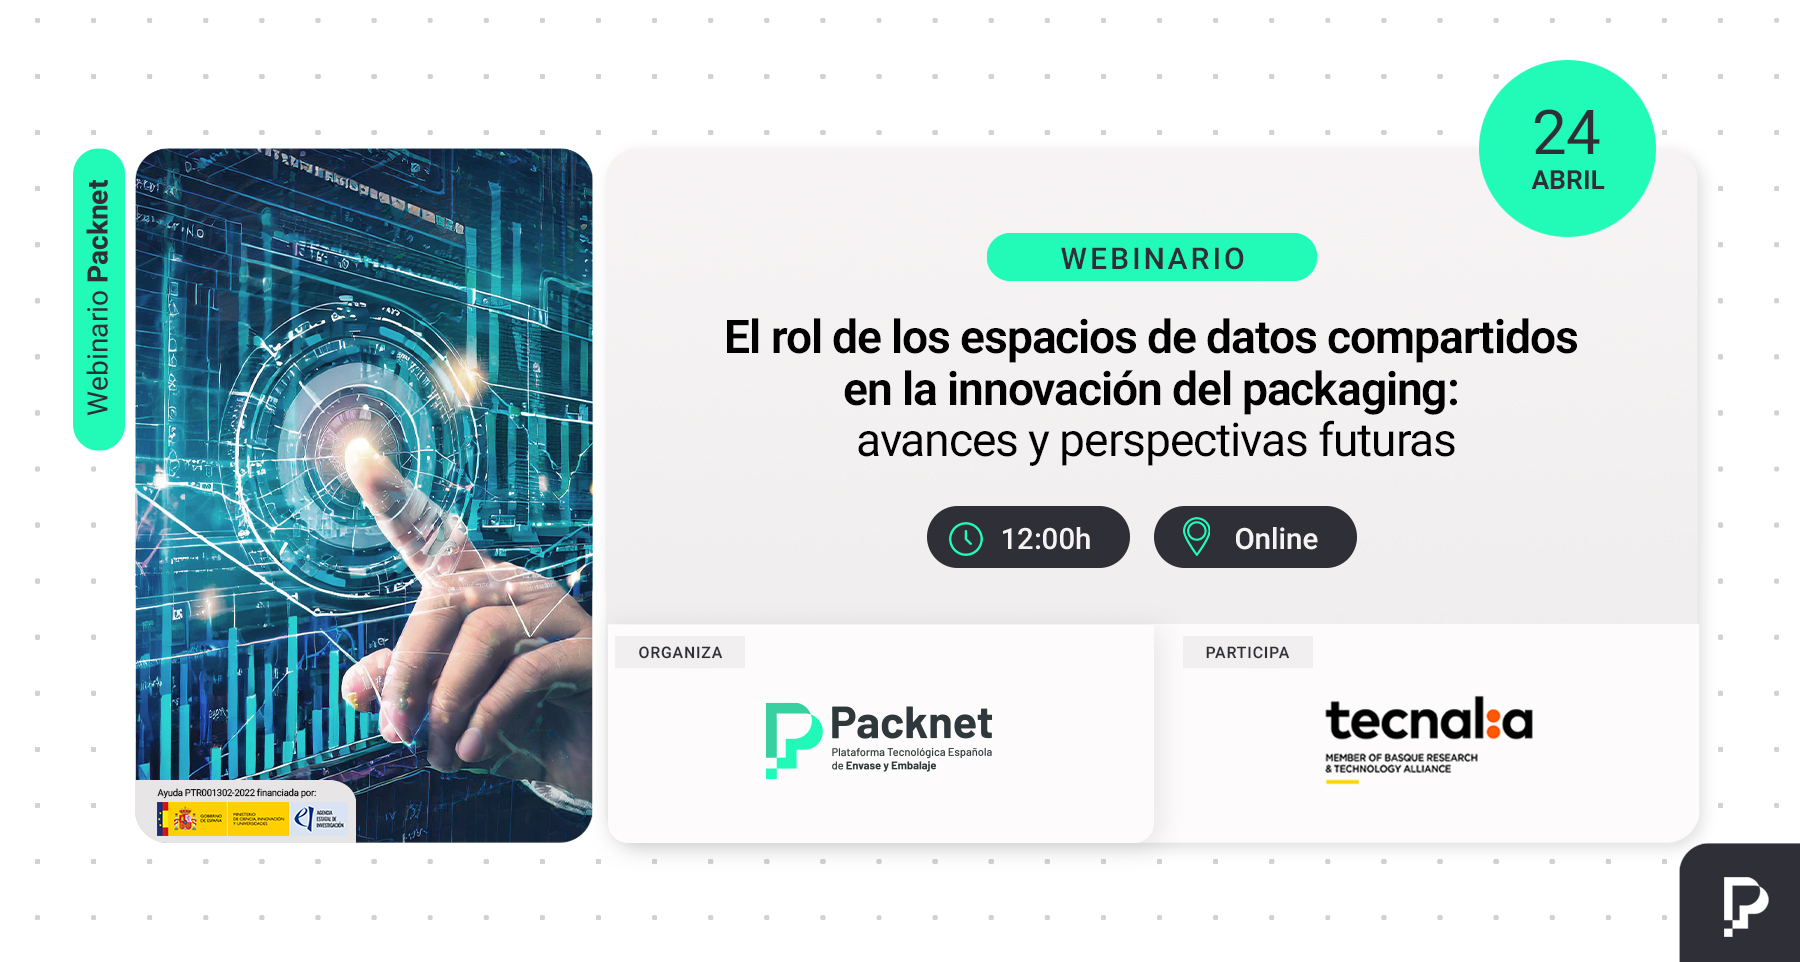 Packnet Webinario: "El rol de los espacios de datos compartidos en la innovación del packaging: avances y perspectivas futuras"